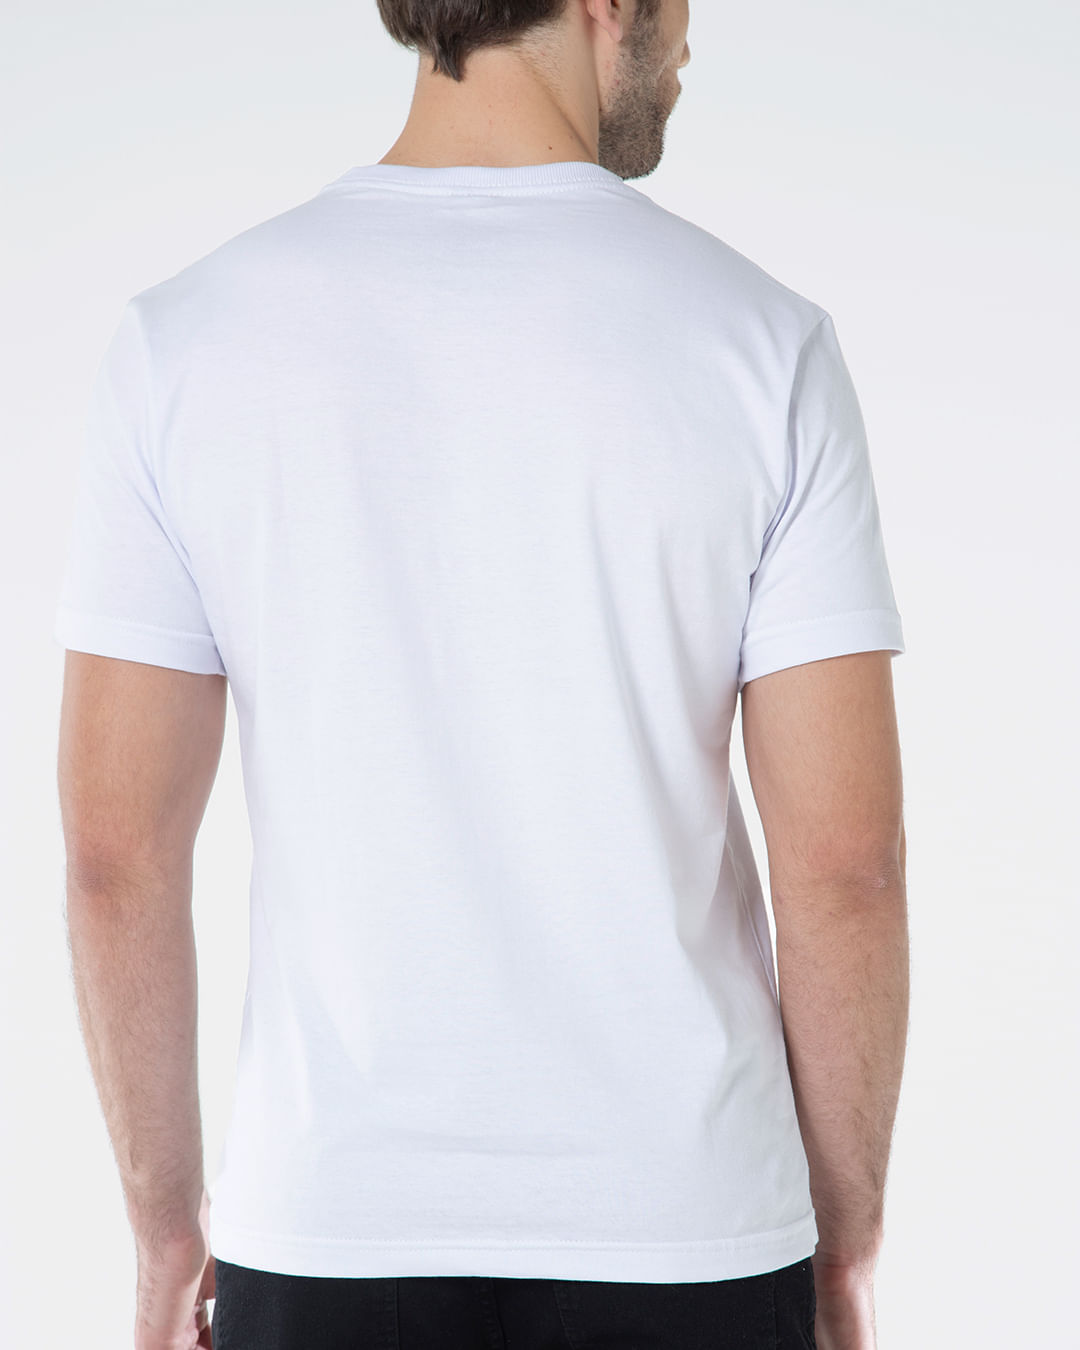 Camiseta-Estampa-Fatal-Branca